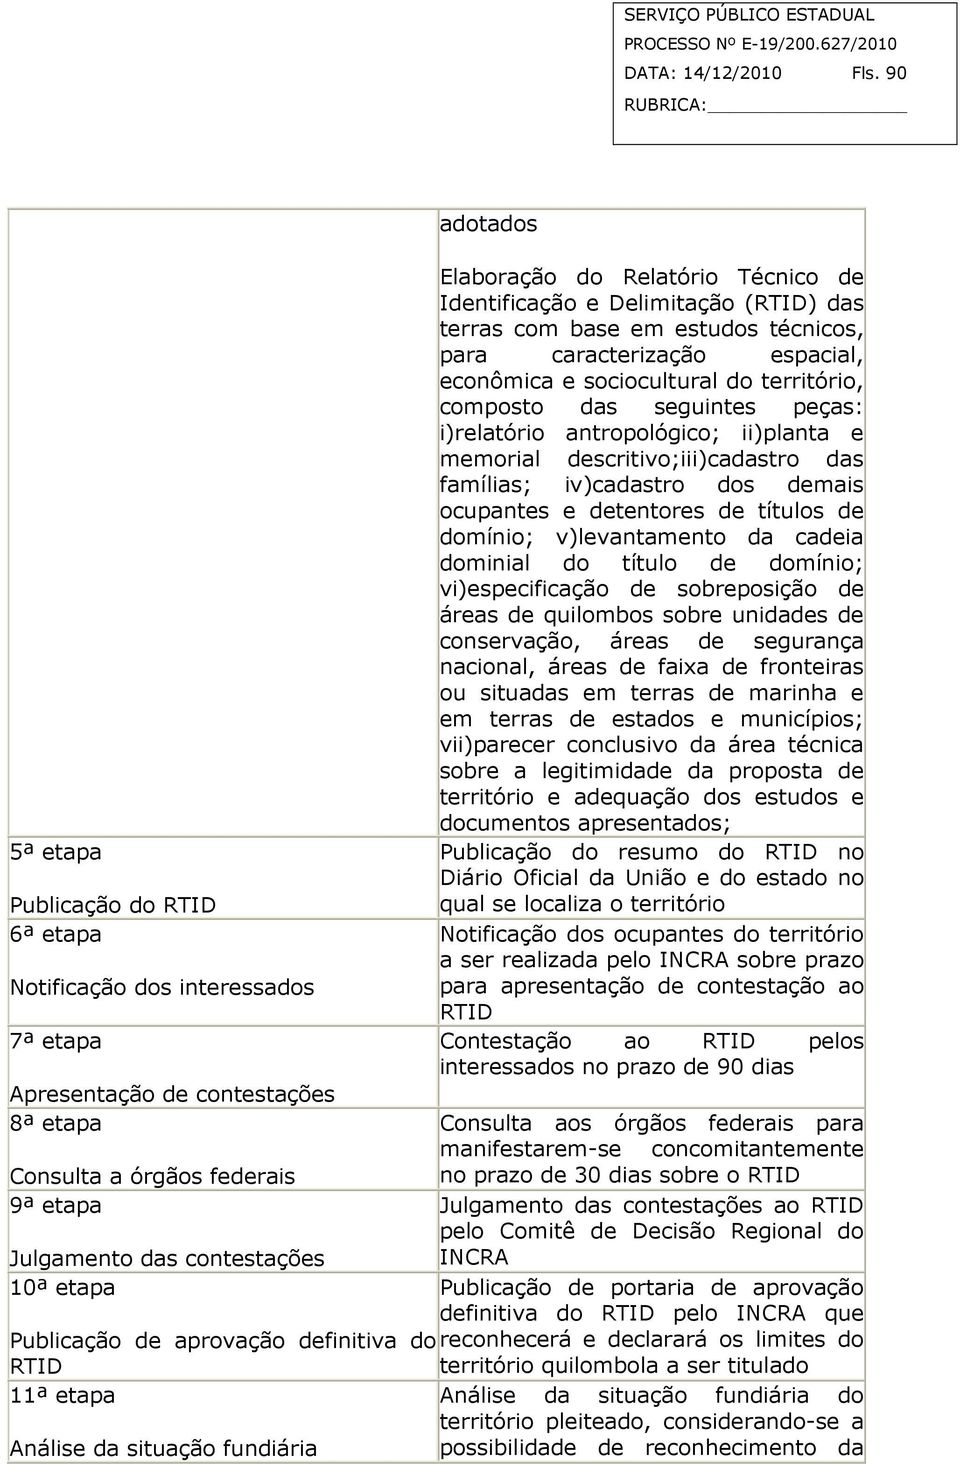 Publicação de aprovação definitiva do RTID 11ª etapa Análise da situação fundiária adotados Elaboração do Relatório Técnico de Identificação e Delimitação (RTID) das terras com base em estudos